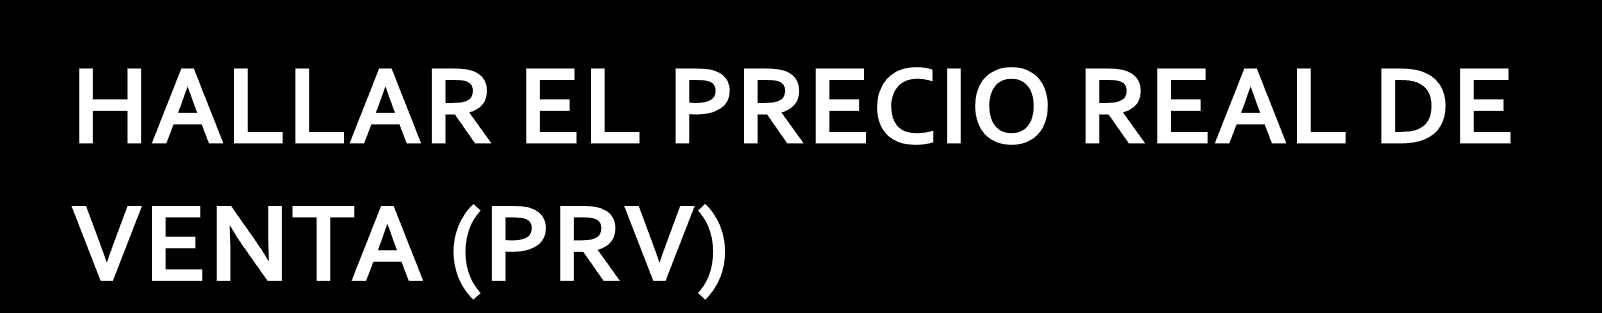 PRECIO REAL DE VENTA (PRV) = PRECIO CARTA O PÚBLICO (PC) / (1+%IVA) $ 18.965,52 = $ 22.